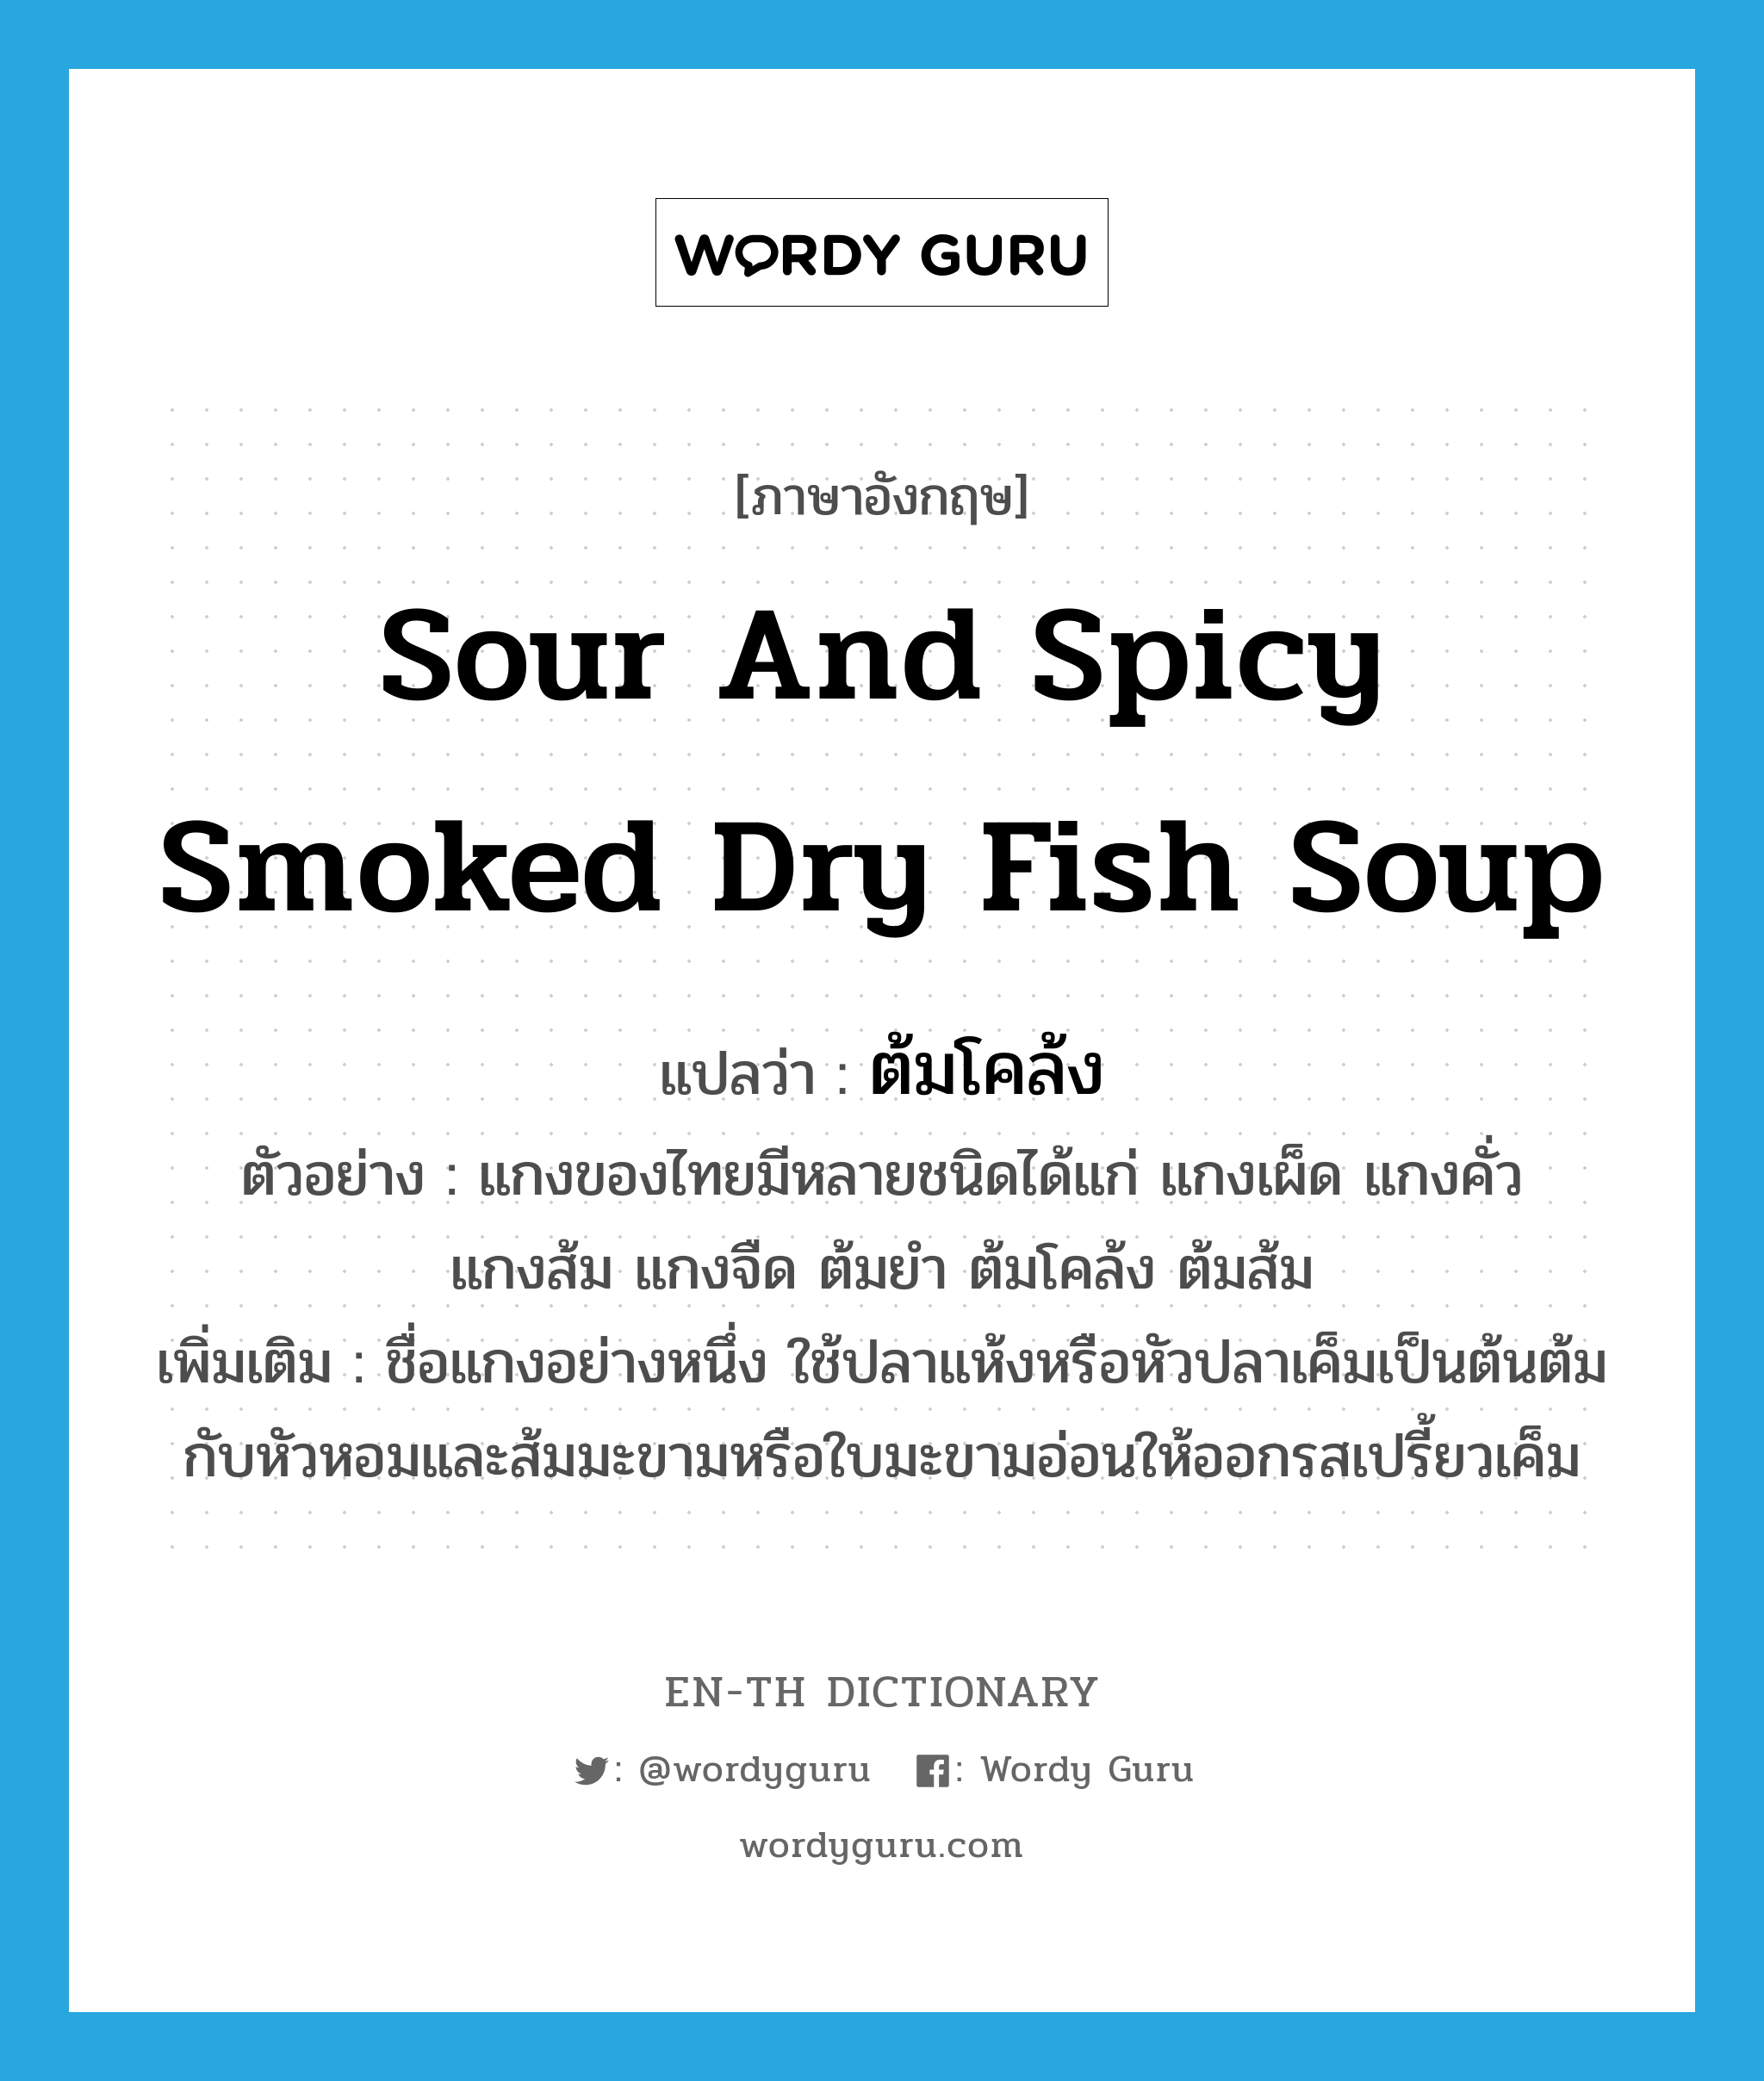 ต้มโคล้ง ภาษาอังกฤษ?, คำศัพท์ภาษาอังกฤษ ต้มโคล้ง แปลว่า sour and spicy smoked dry fish soup ประเภท N ตัวอย่าง แกงของไทยมีหลายชนิดได้แก่ แกงเผ็ด แกงคั่ว แกงส้ม แกงจืด ต้มยำ ต้มโคล้ง ต้มส้ม เพิ่มเติม ชื่อแกงอย่างหนึ่ง ใช้ปลาแห้งหรือหัวปลาเค็มเป็นต้นต้มกับหัวหอมและส้มมะขามหรือใบมะขามอ่อนให้ออกรสเปรี้ยวเค็ม หมวด N